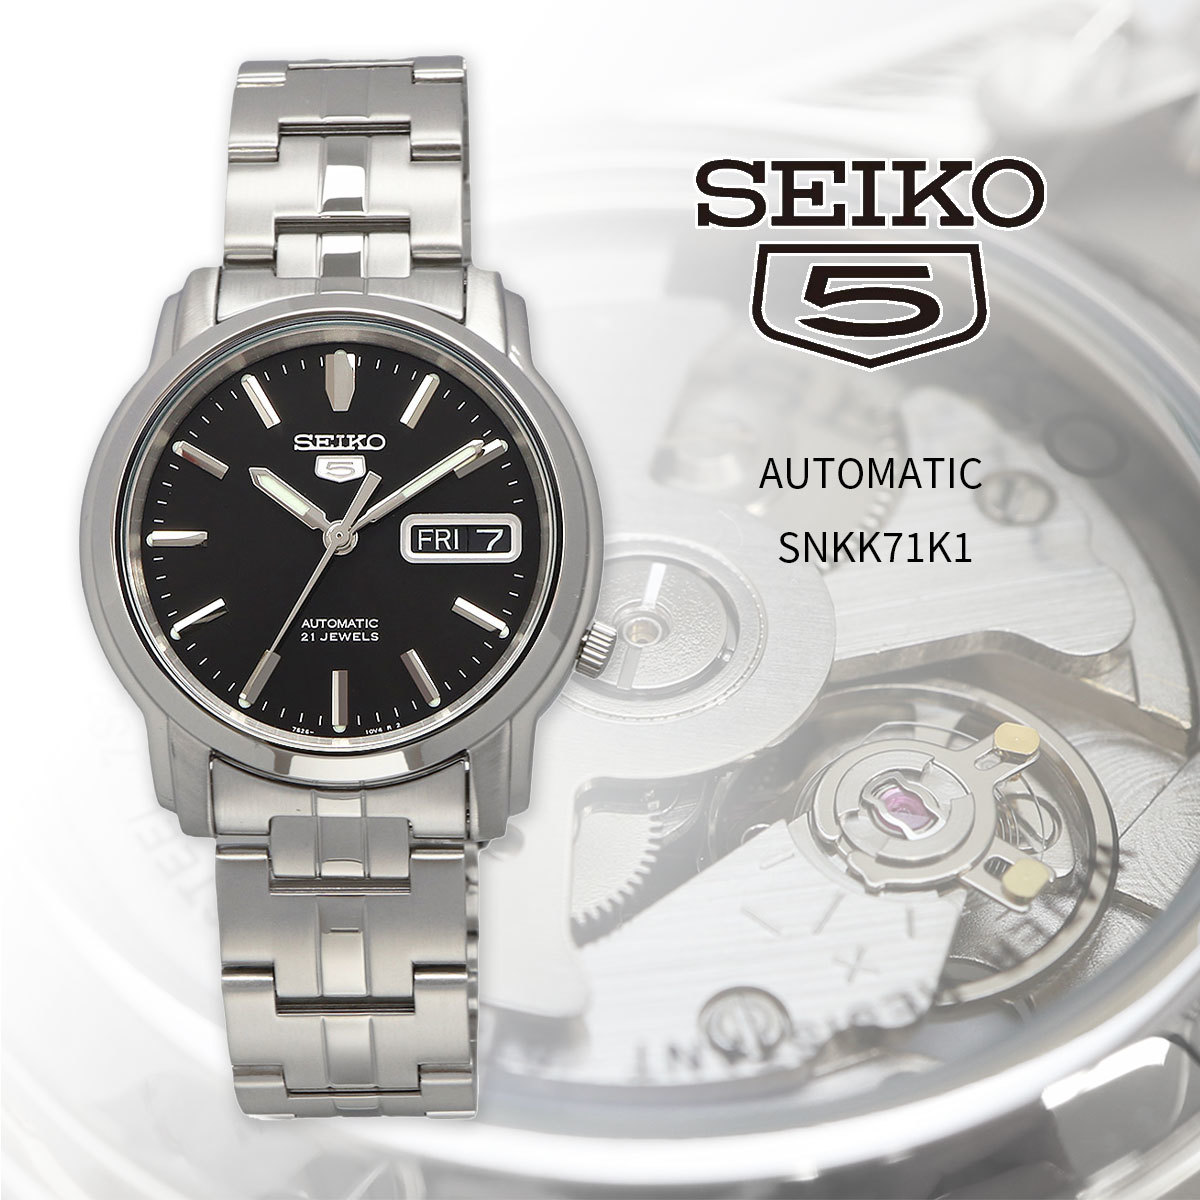 期間限定特別価格 セイコー5 海外モデル メンズ 腕時計 セイコー SEIKO 自動巻き SNKK71K1 カジュアル ビジネス 海外モデル